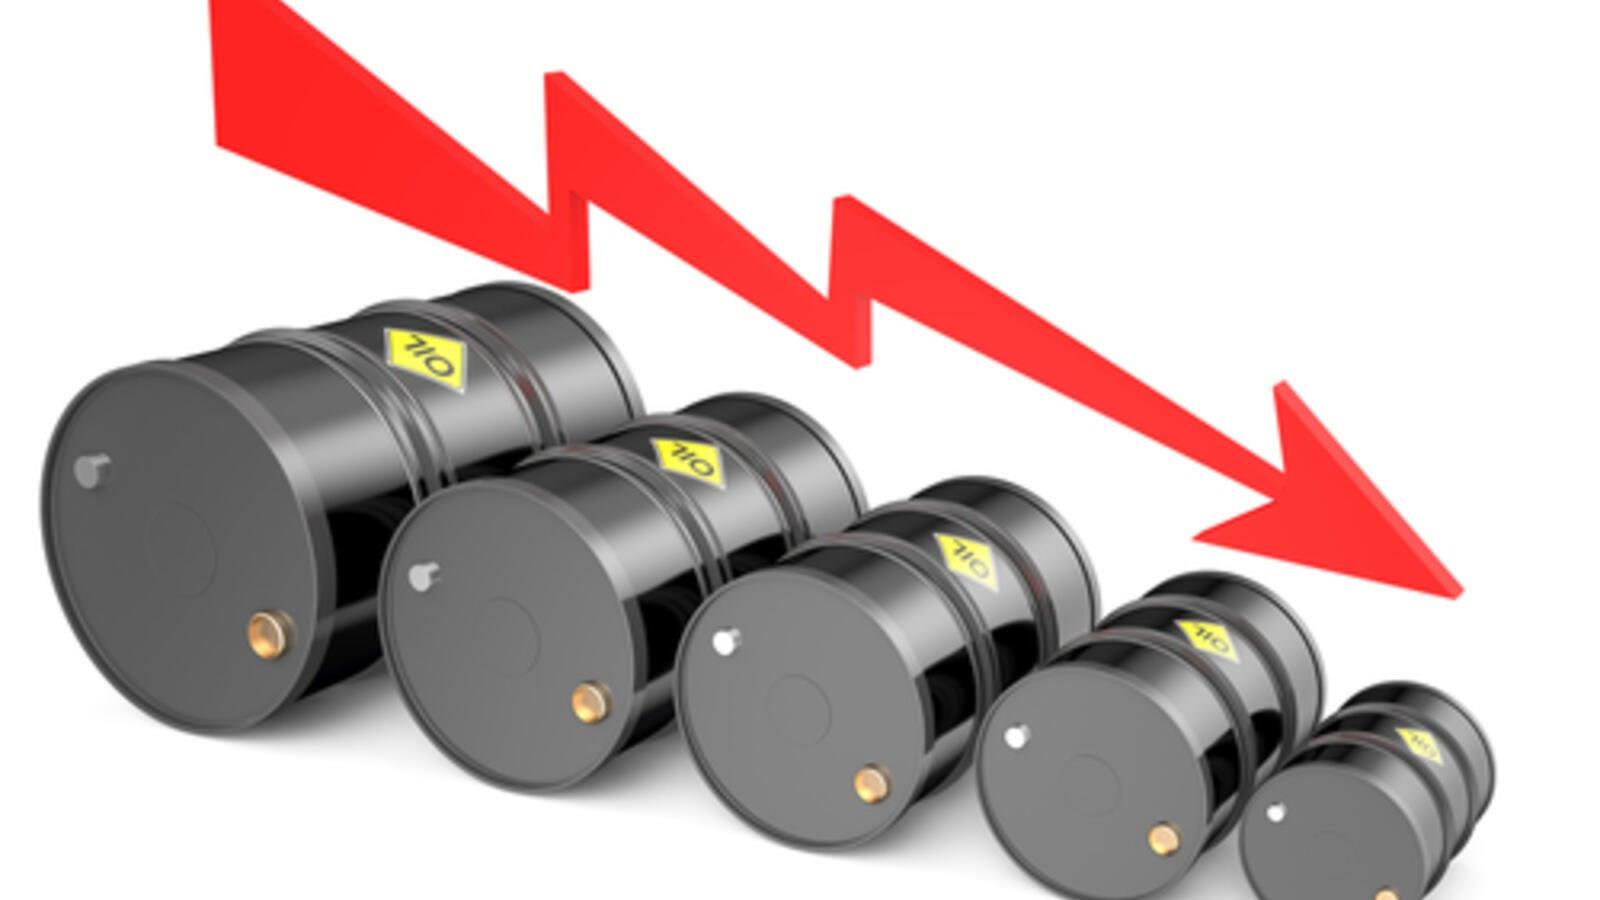 انخفاض حاد في أسعار النفط